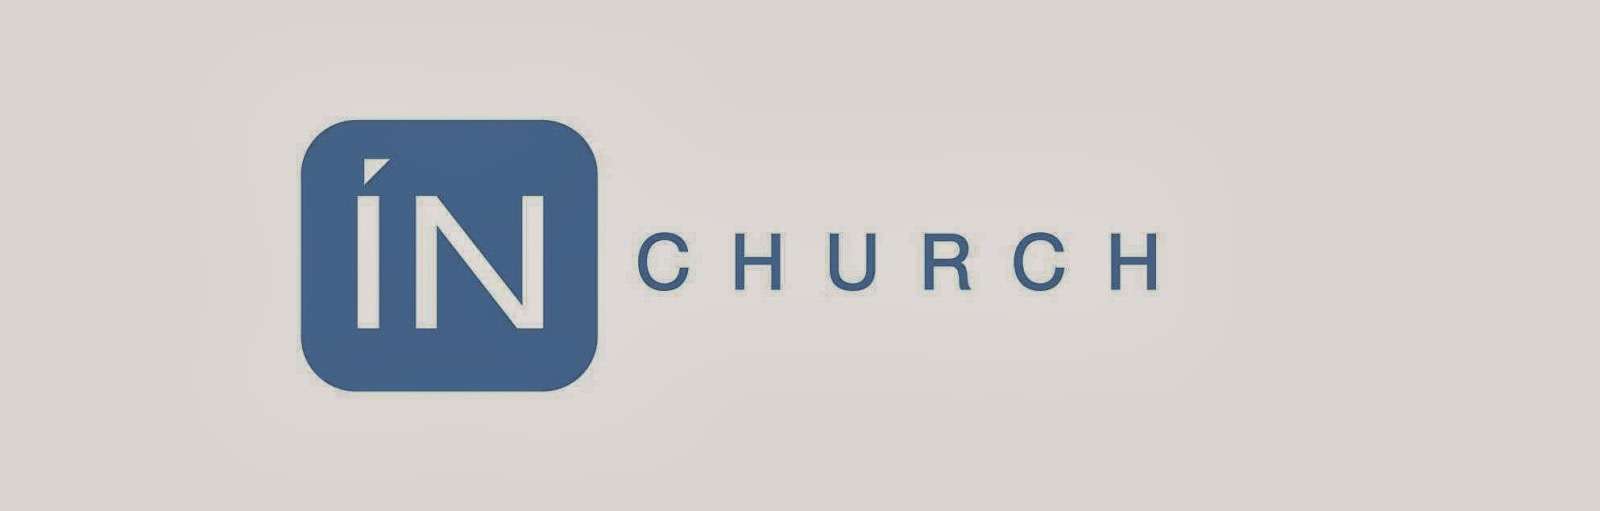 INChurch » Church in Weston FL